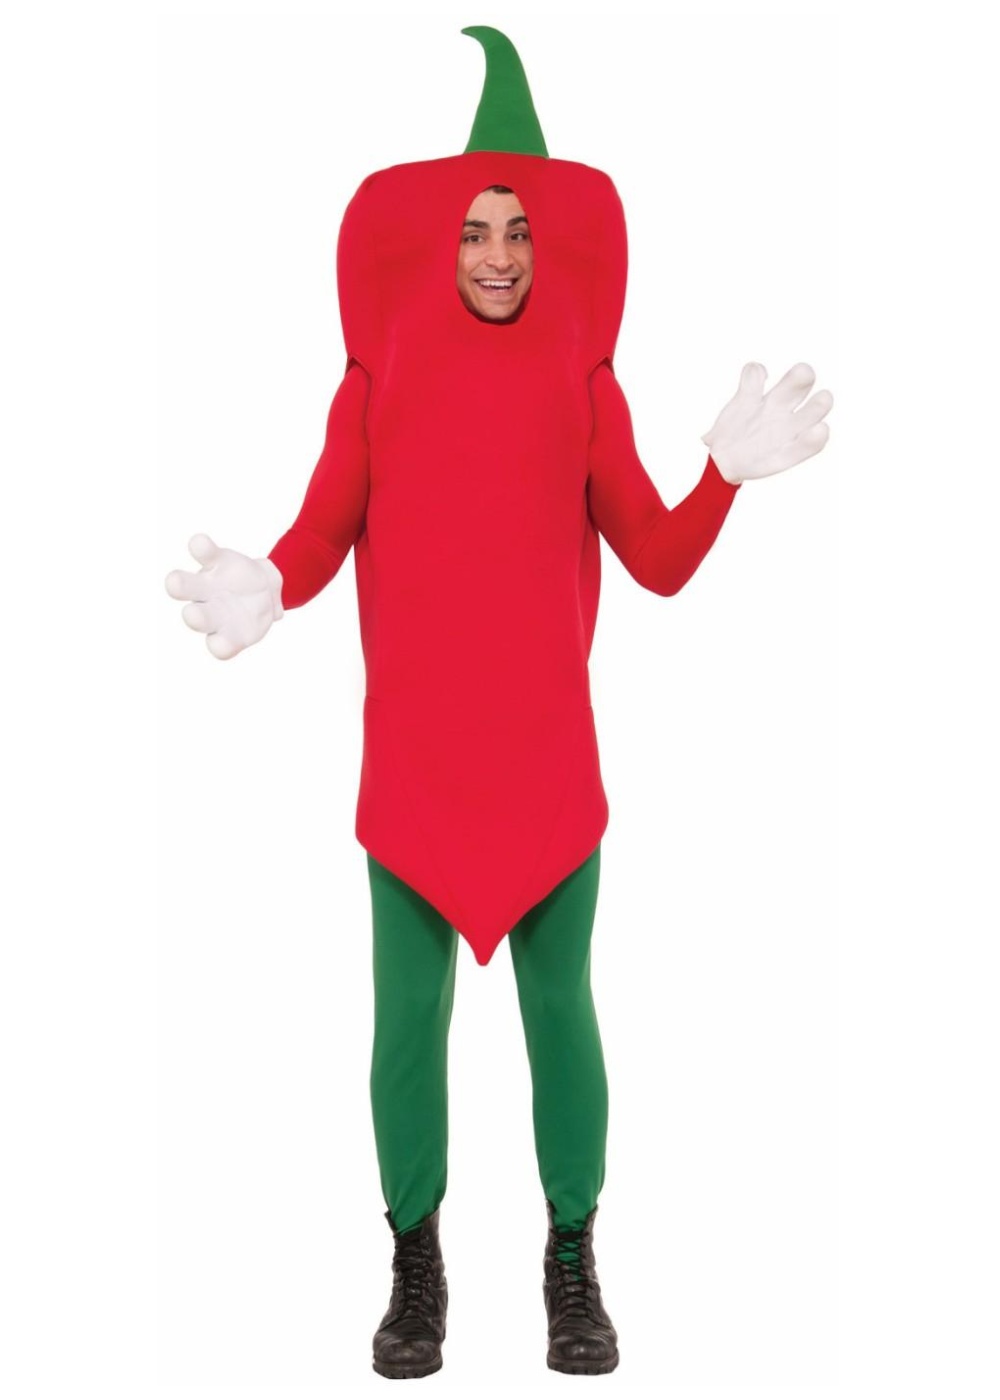 Hot Pepper Costume